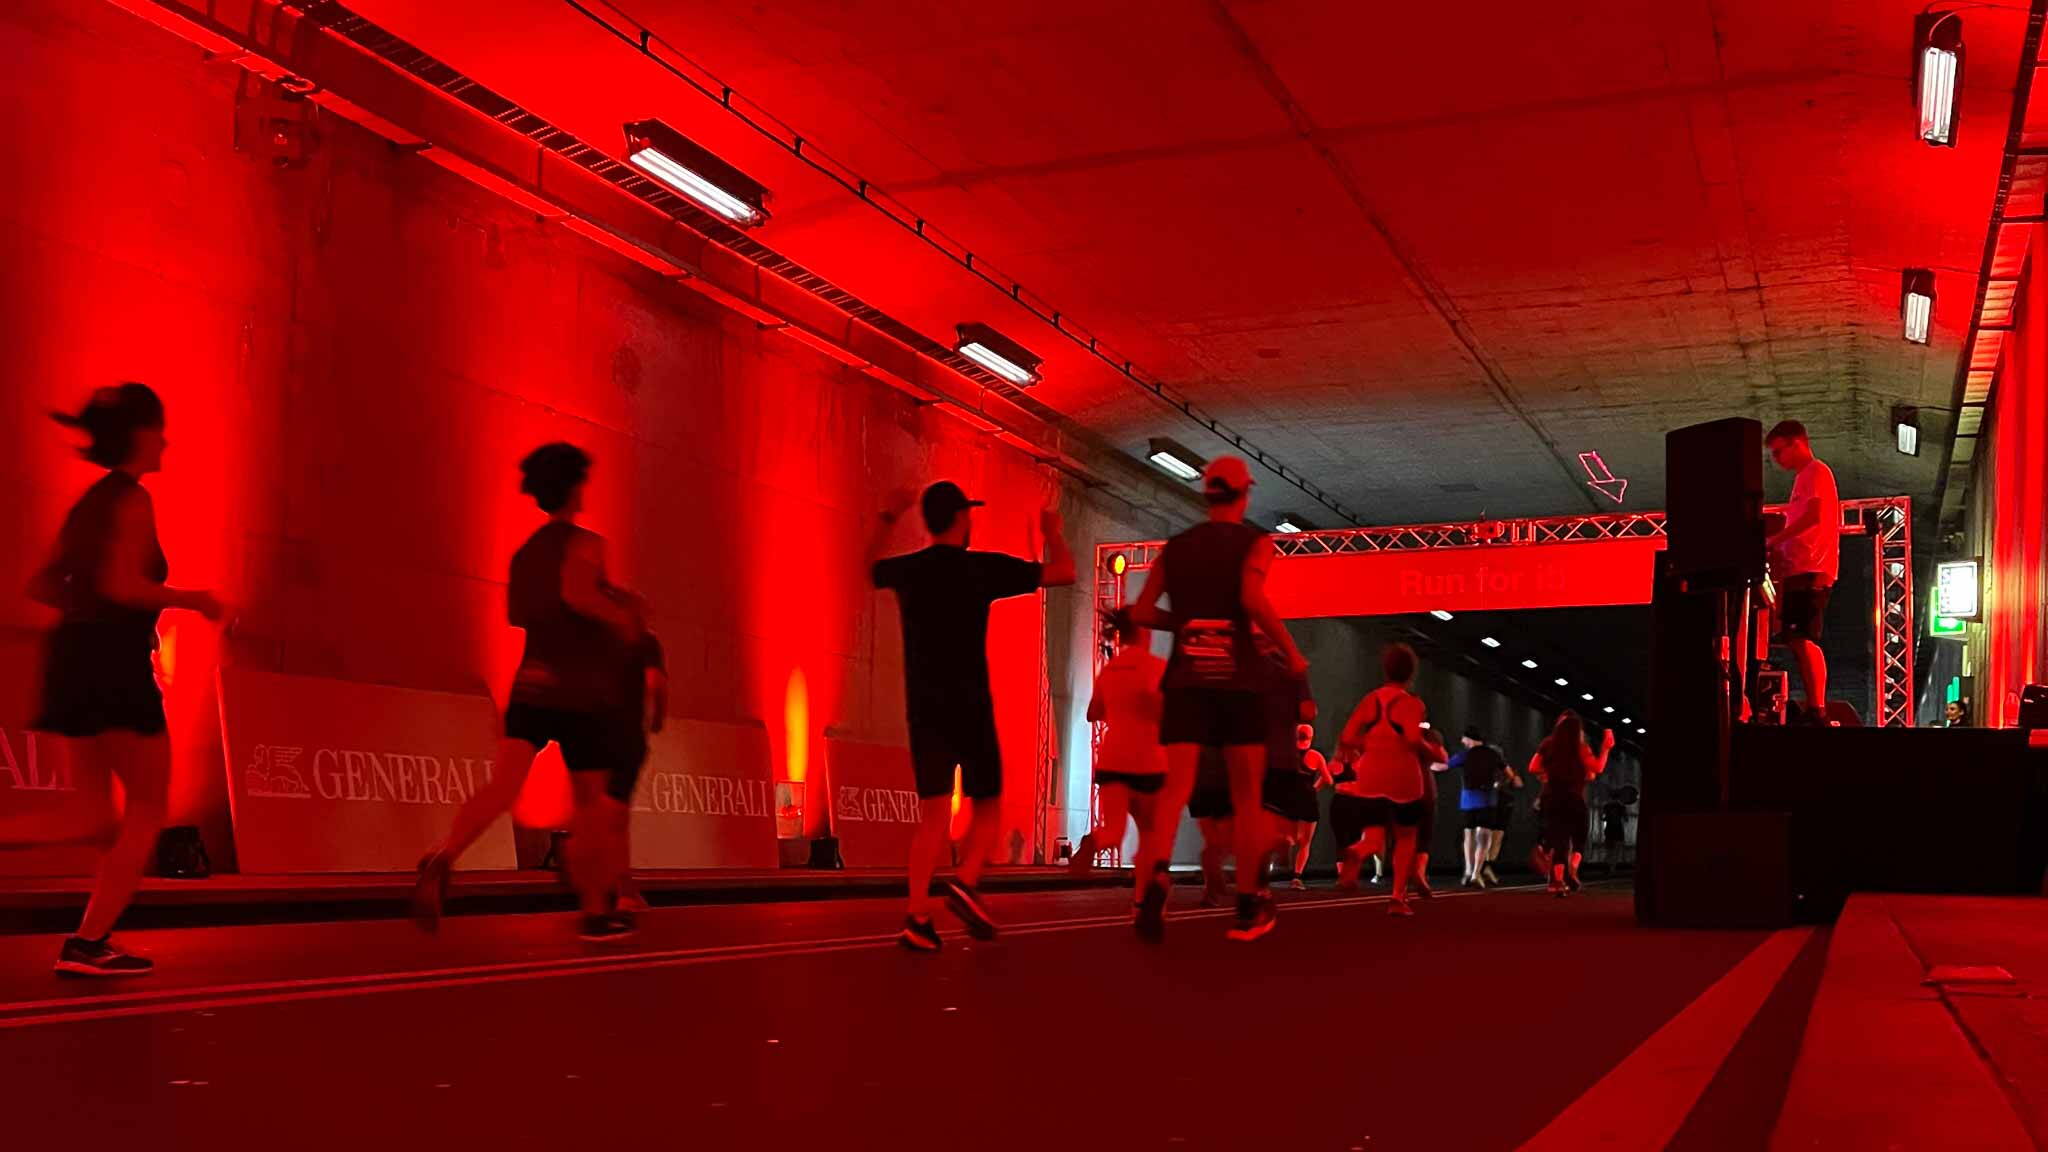 Für Generali sorgten wir am Generali Genèva Marathon 2022 für ein unvergessliches Lauferlebnis auf der Strecke durch die Einrichtung einer Generali-Zone in einer Unterführung und einem Strassentunnel, die mit Generali Branding, Licht und Musik ausgestattet war.